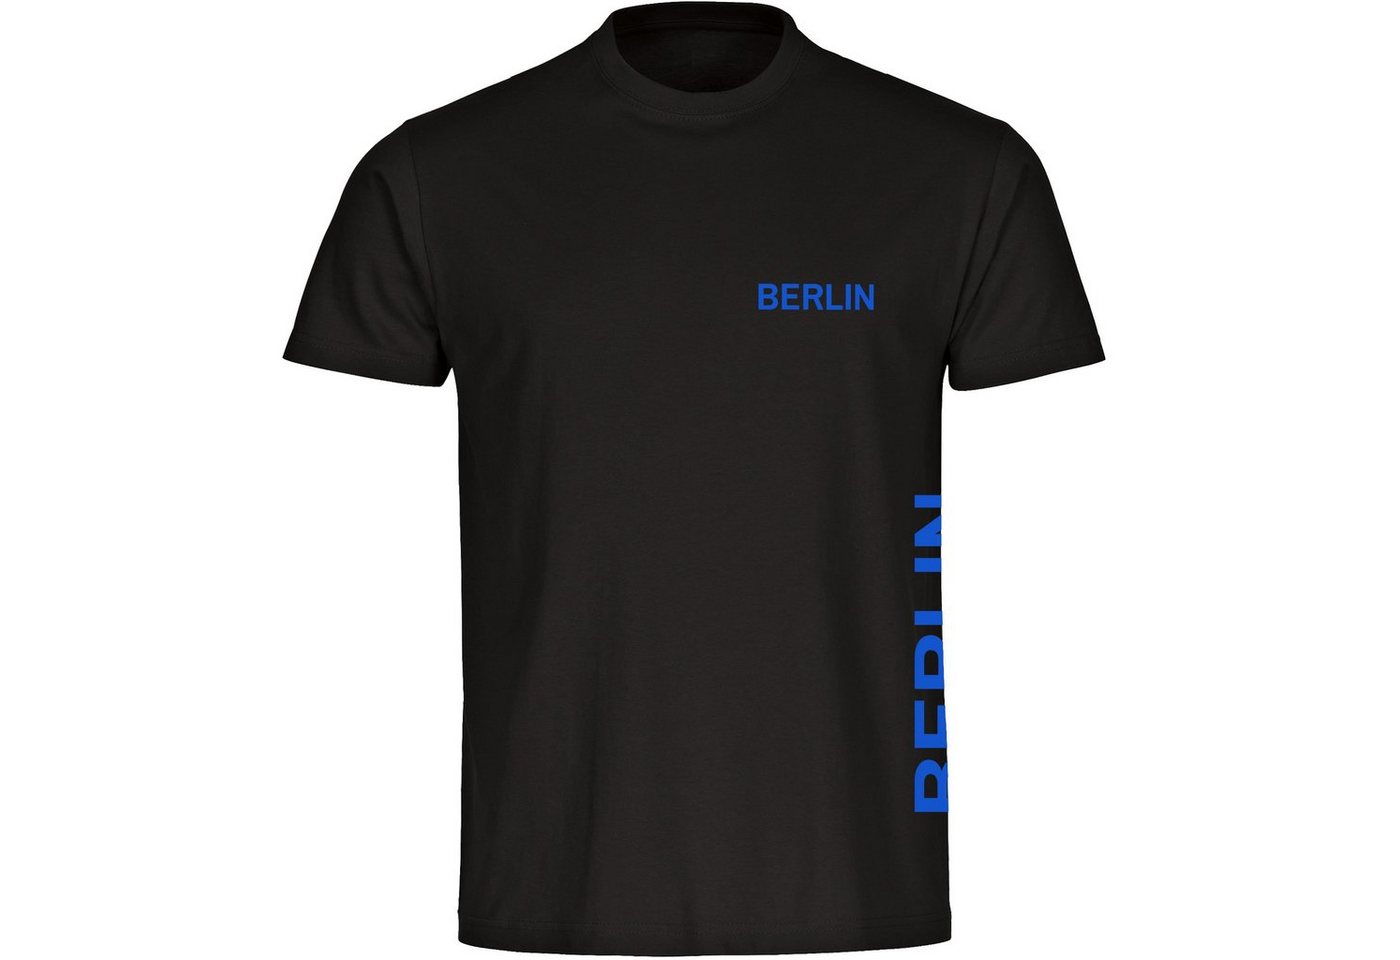 multifanshop T-Shirt Herren Berlin blau - Brust & Seite - Männer von multifanshop